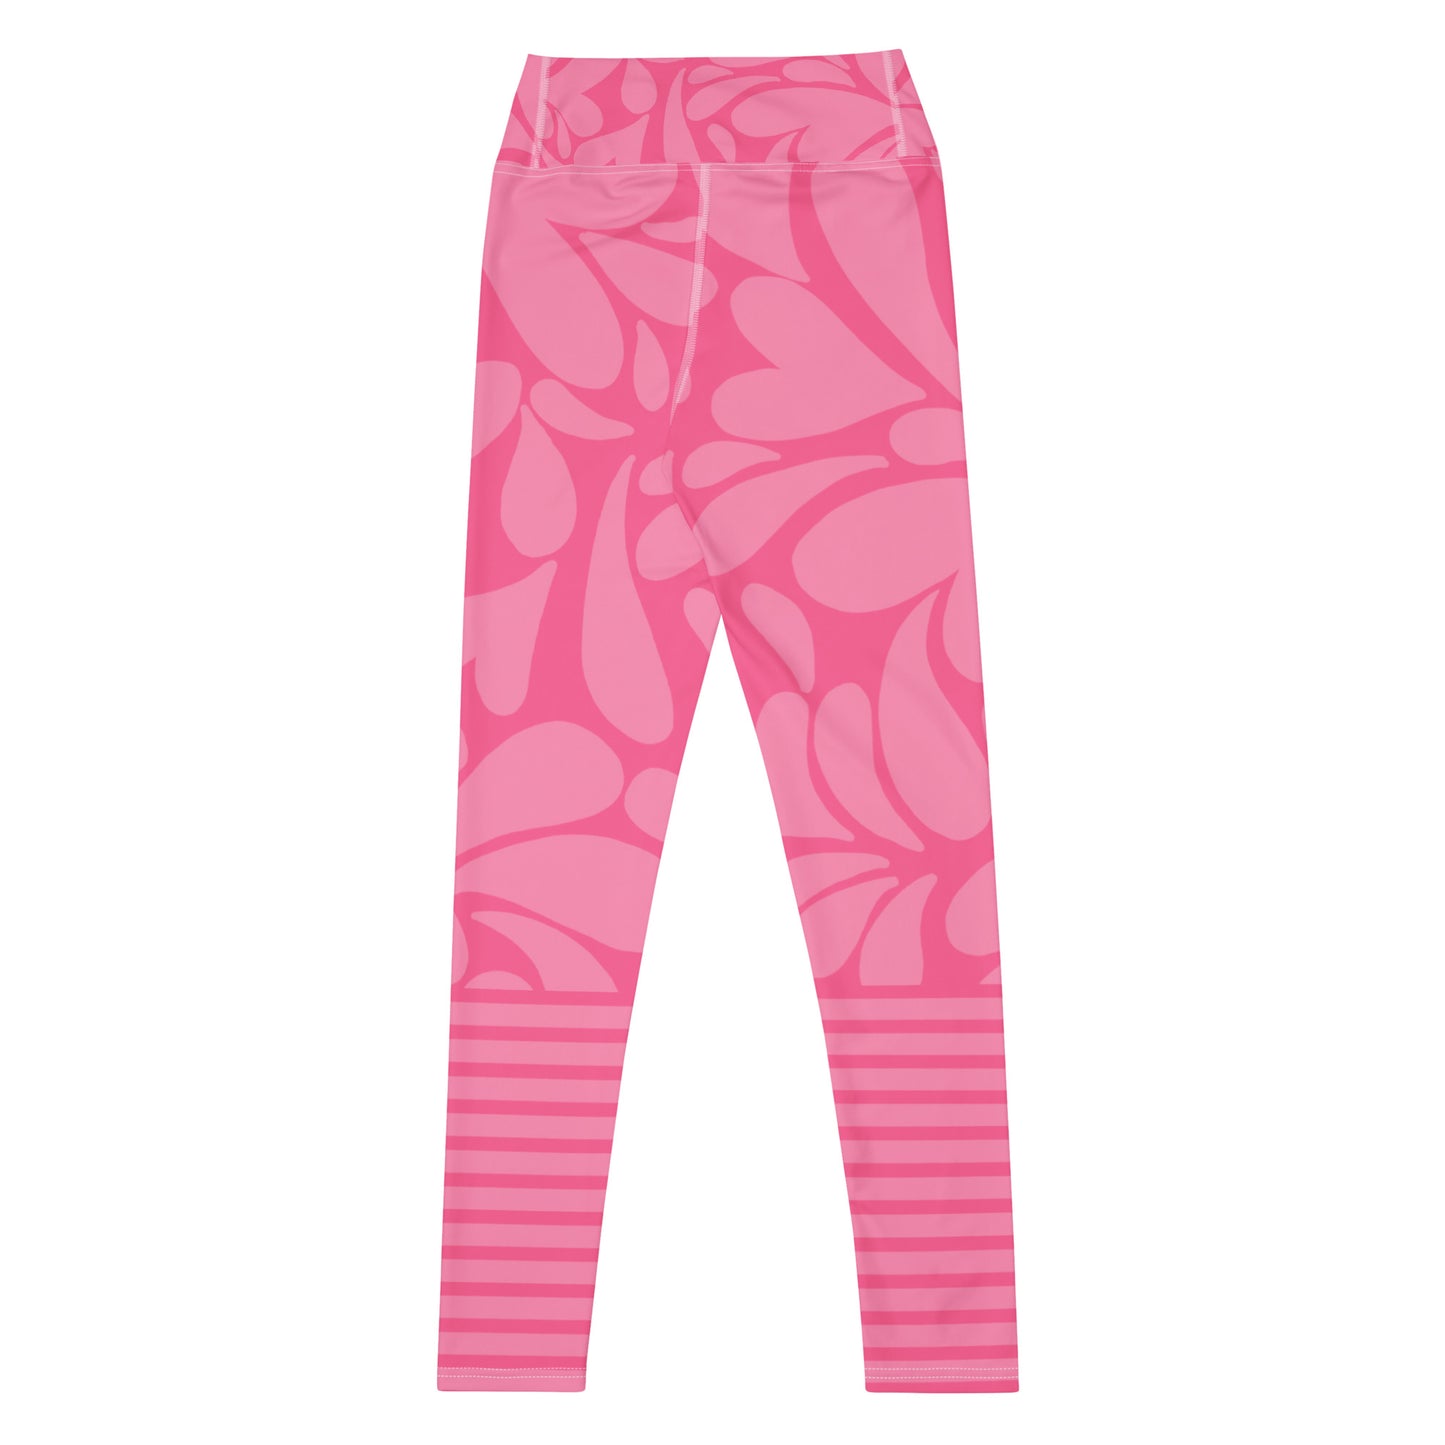 Pinky Heart- Yoga Leggings- High Waist Yoga Pants